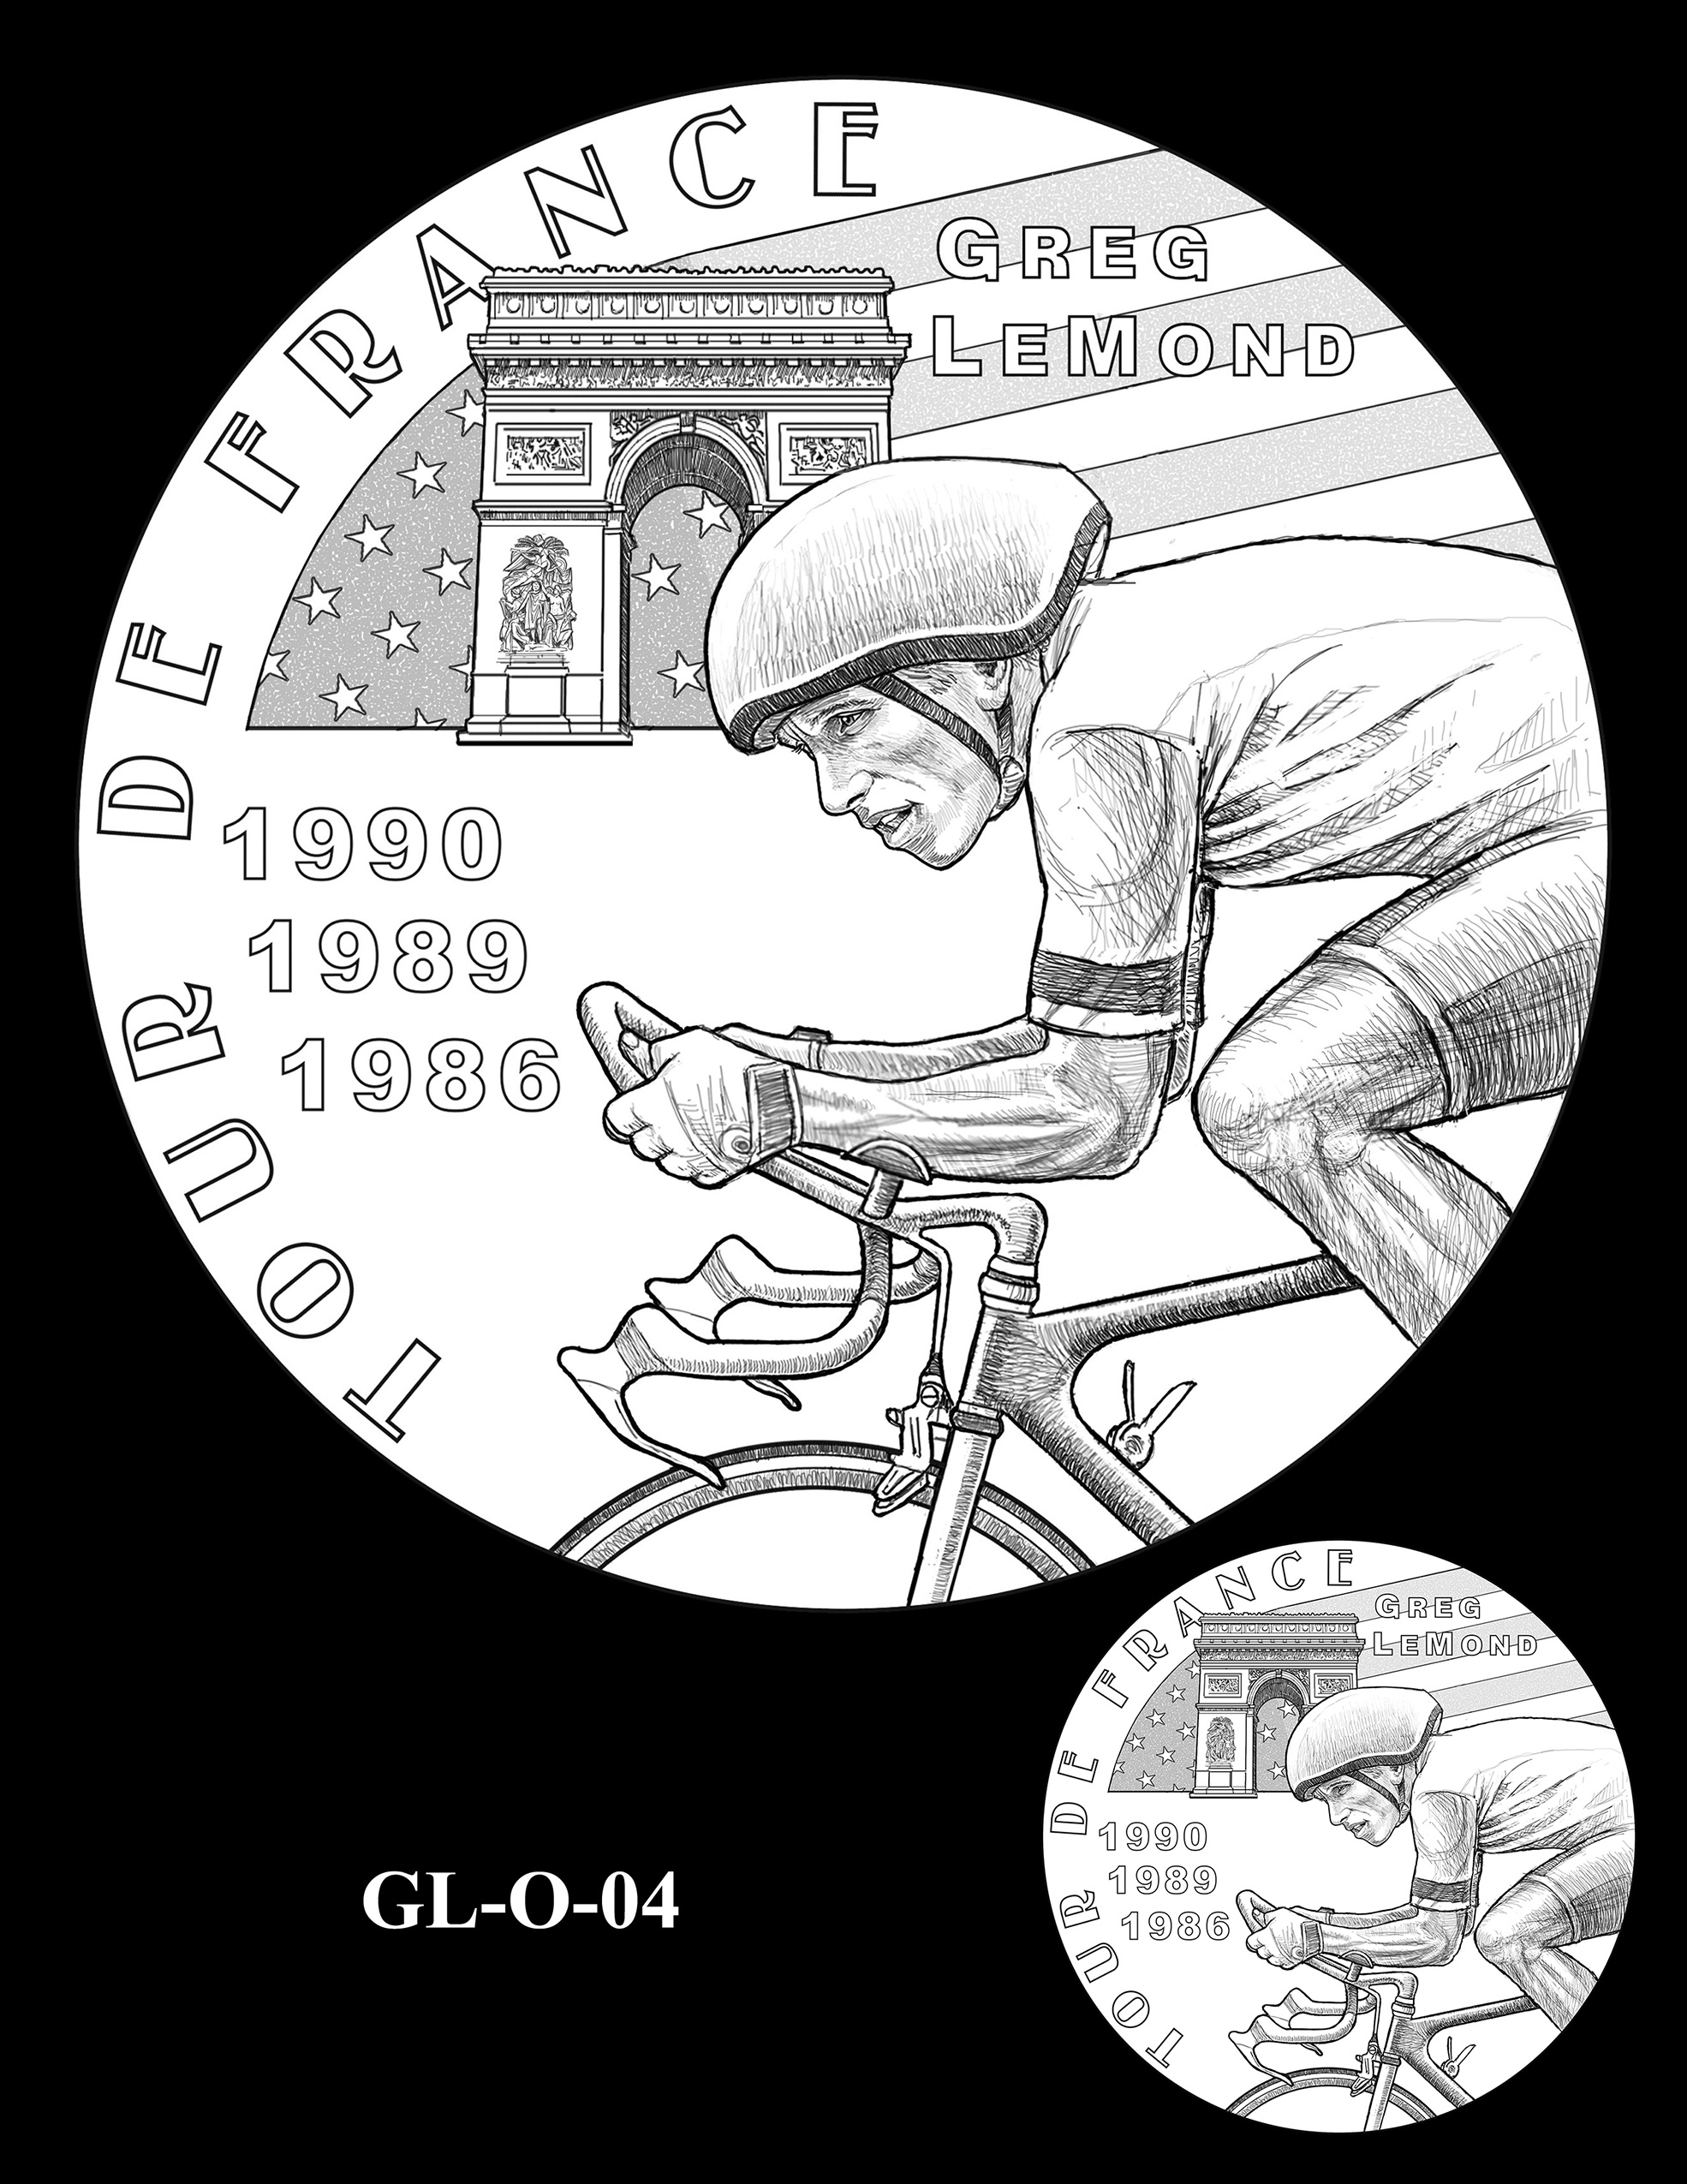 GL-O-04 -- Greg LeMond Congressional Gold Medal